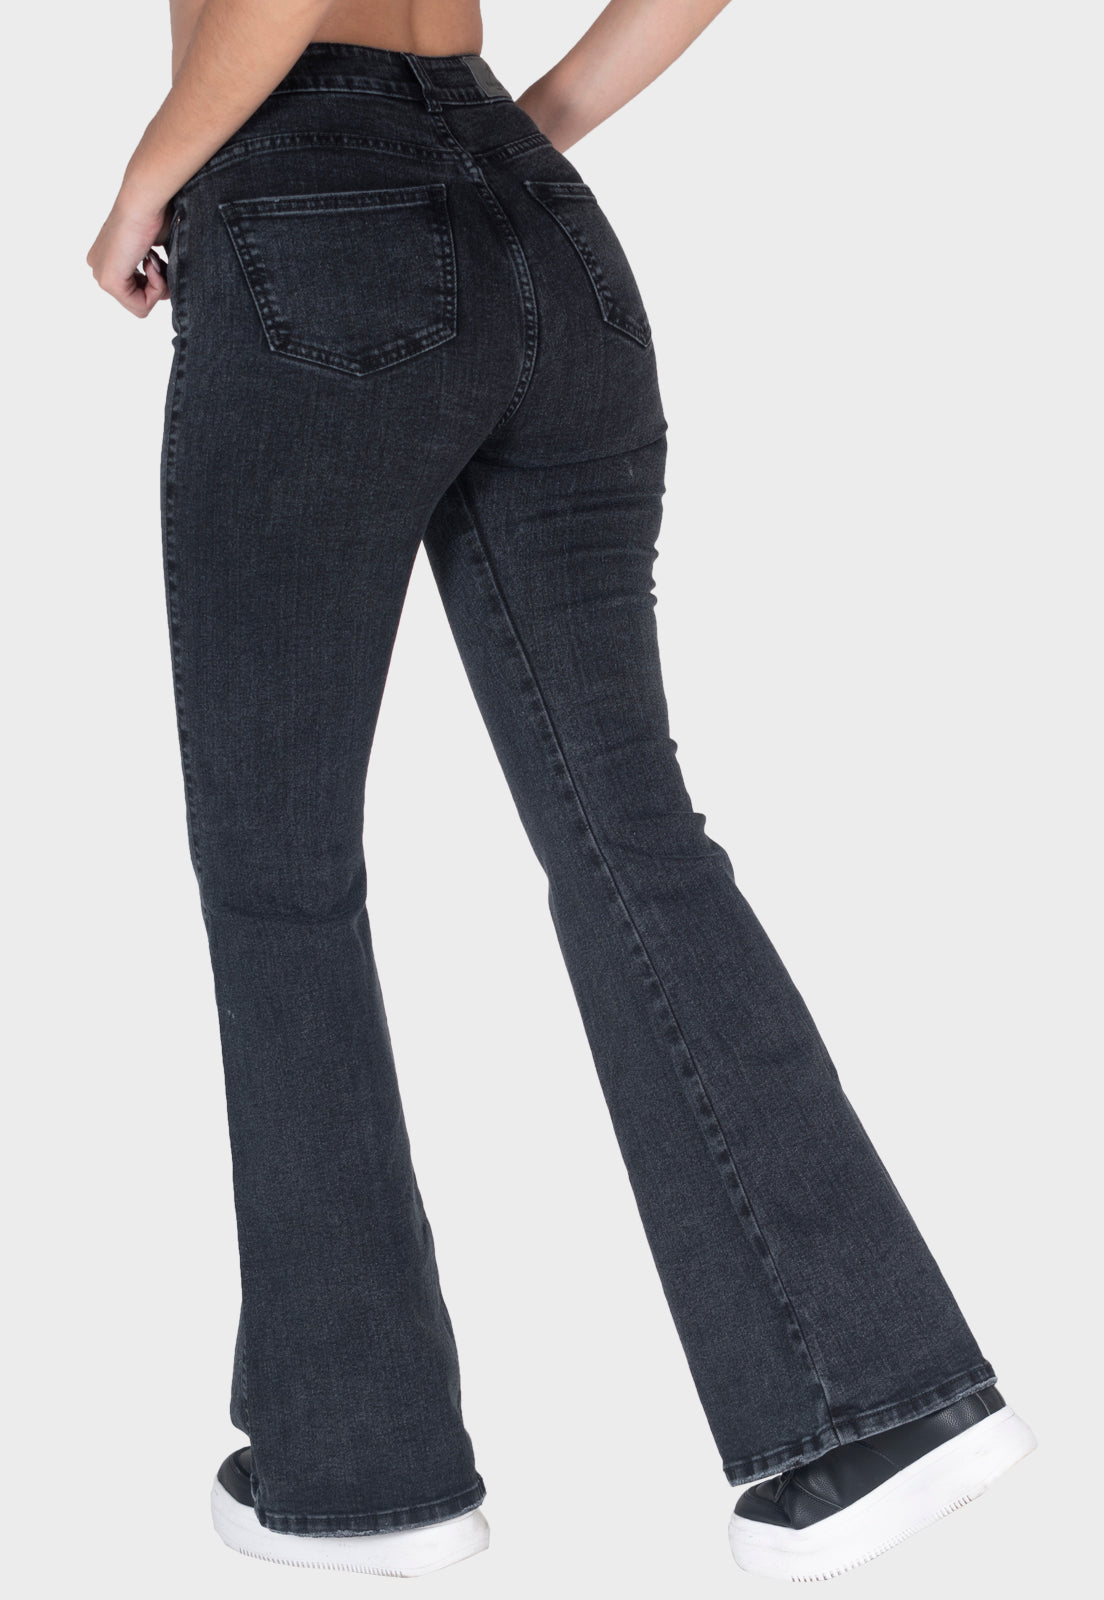 Pantalón jean semiflare negro para mujer